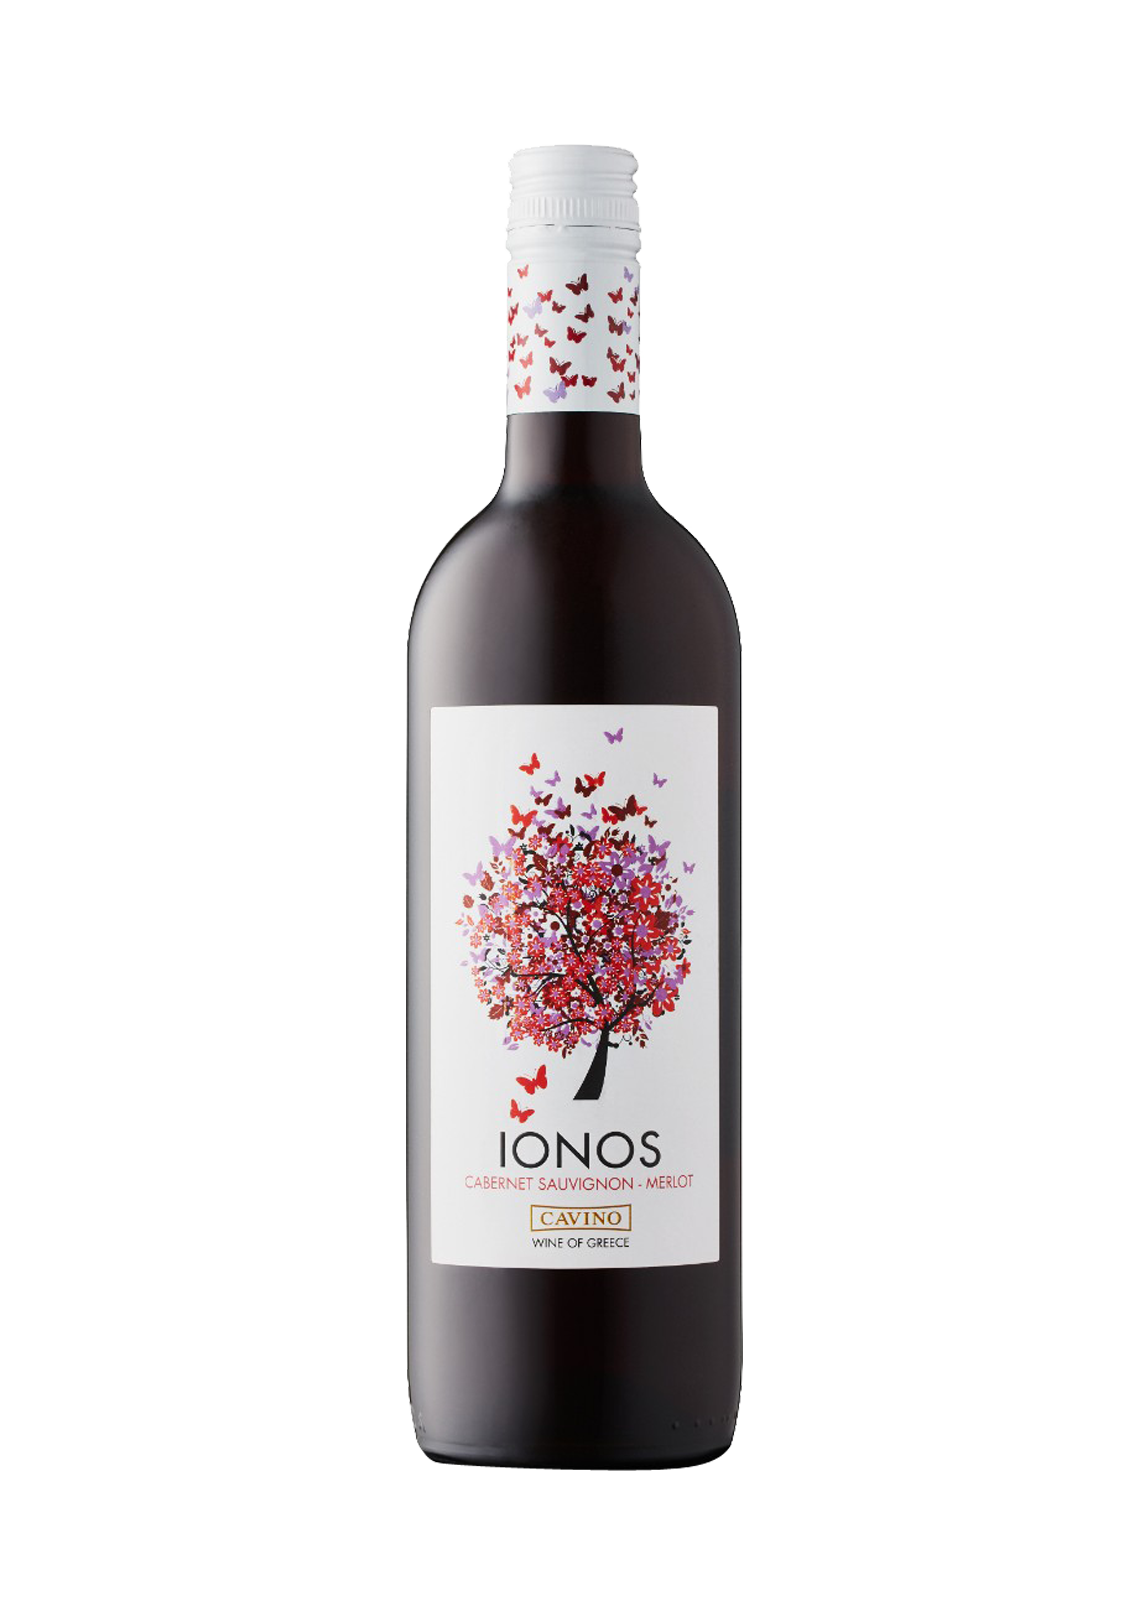 Alcohol Centaurus UAE Int: online - Store Liquor Dubai Shop Wine, in